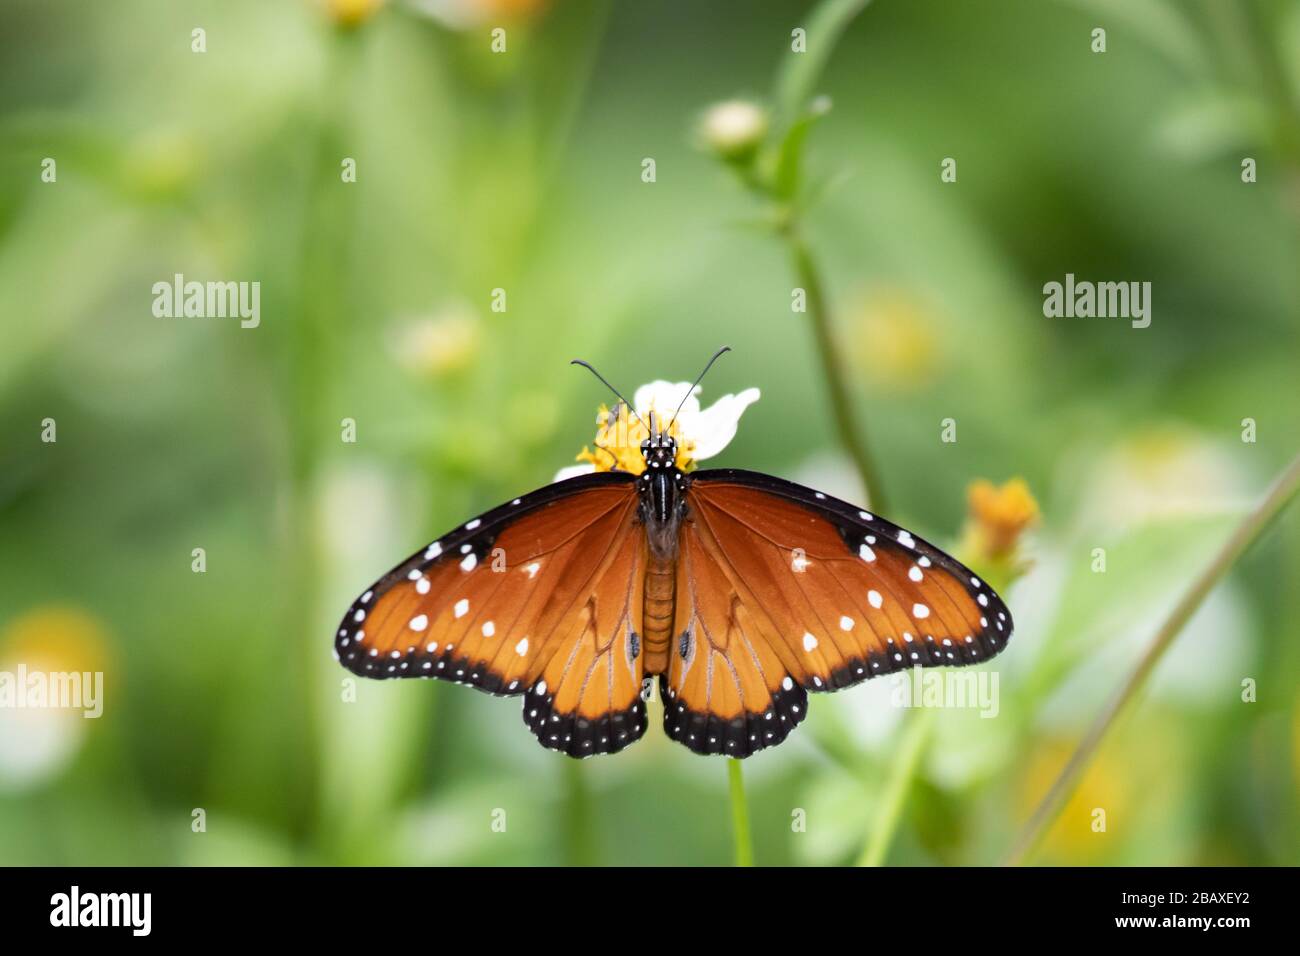 La farfalla regina (Danaus gilippus) è uno di molti insetti che derivano le difese chimiche contro i suoi predatori dalla sua pianta alimentare. Foto Stock